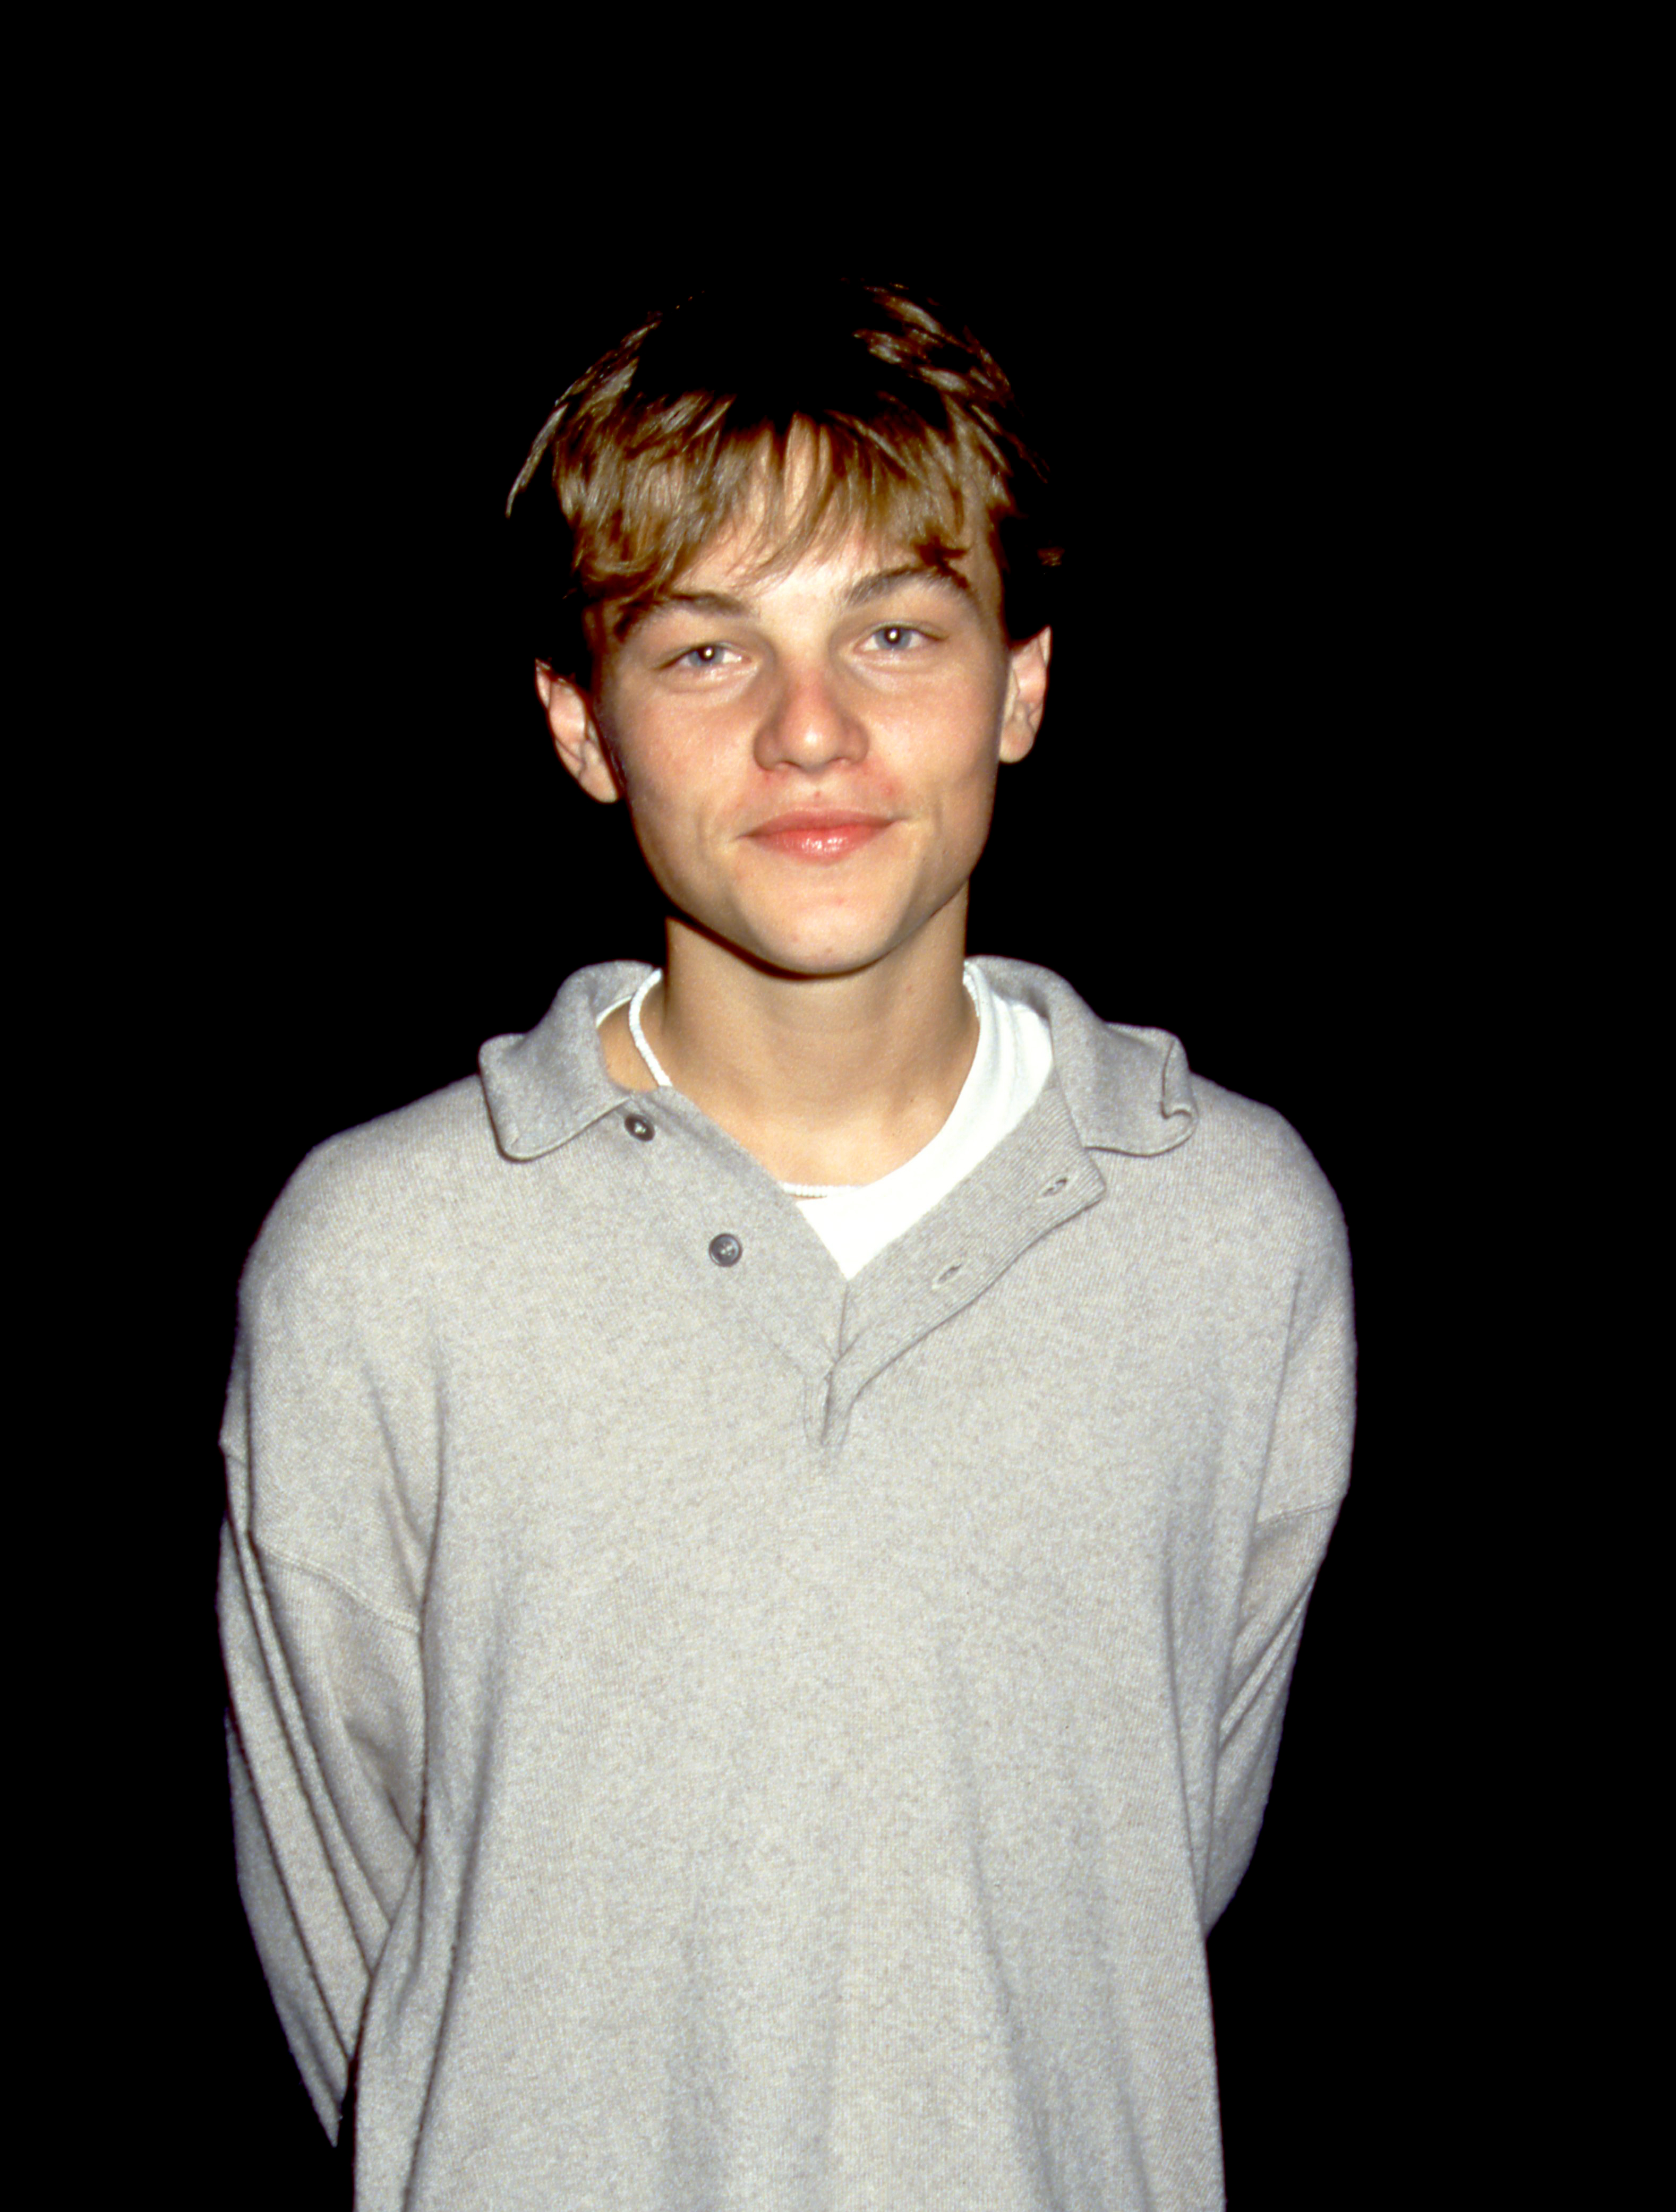 El joven posa para un retrato el 8 de septiembre de 1993 | Foto: Getty Images